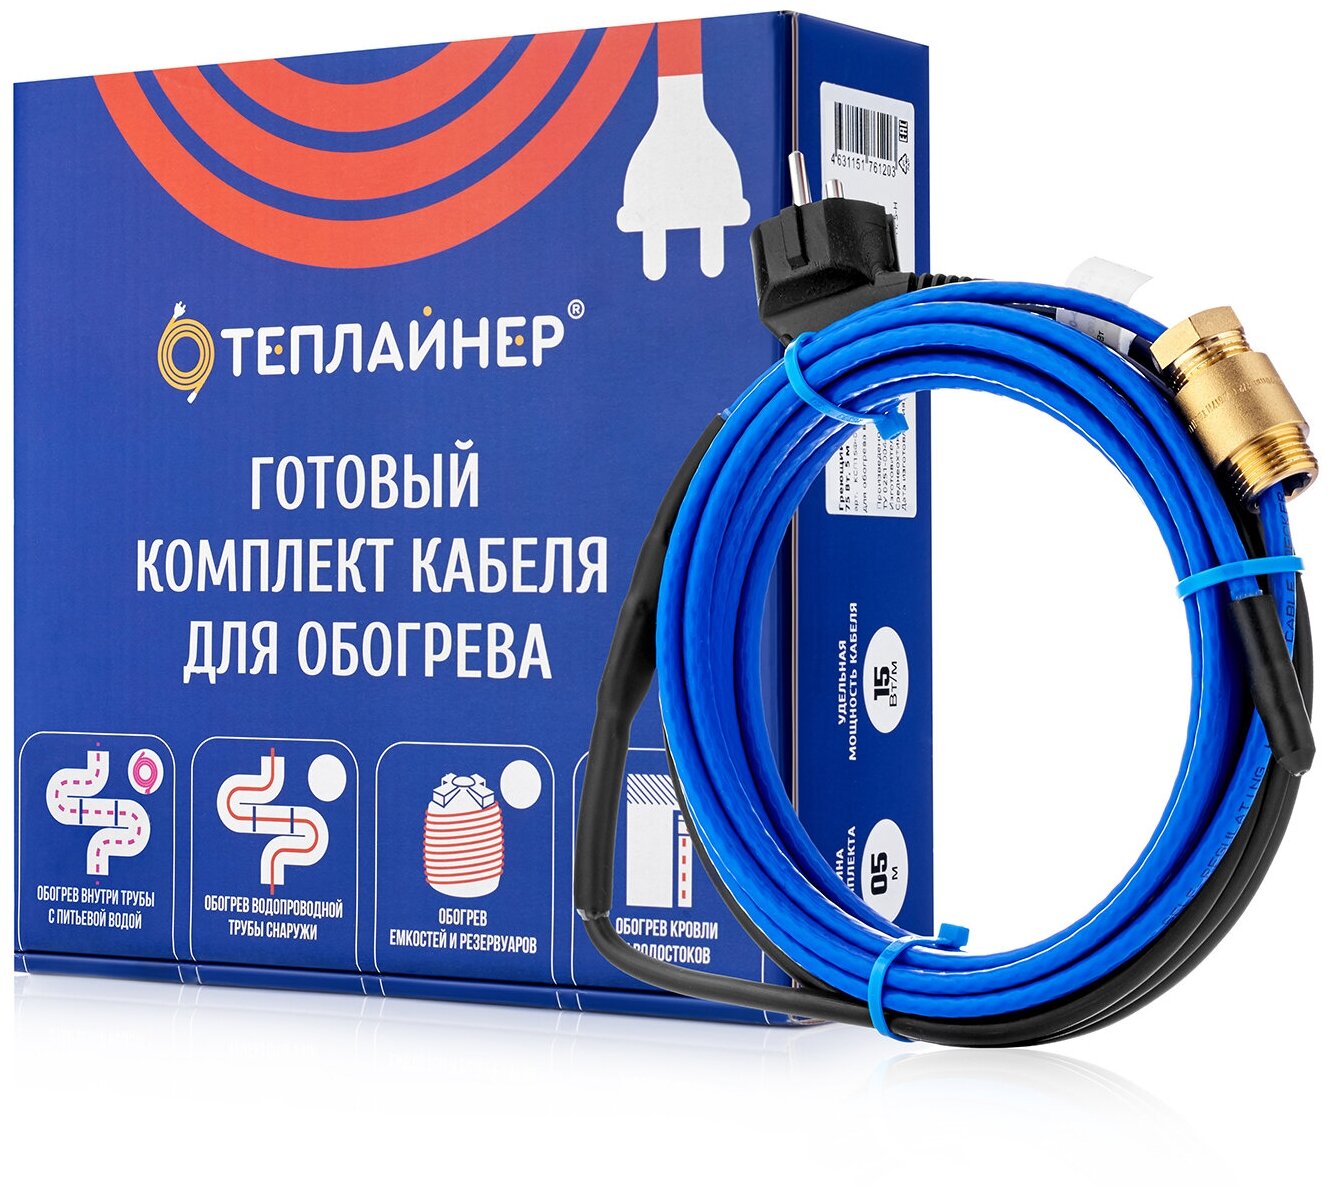 Греющий кабель теплайнер PROFI КСП-10, 40 Вт, 4 м - фотография № 4